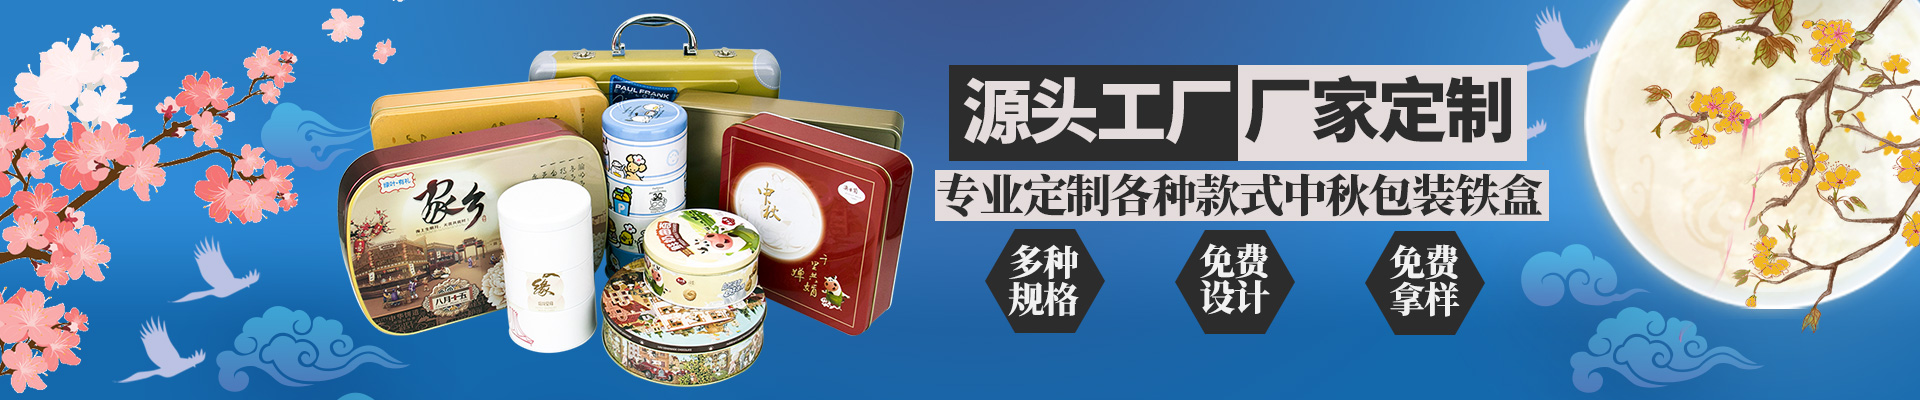 月饼铁盒月饼欧冠体育app下载【股份】有限公司小横图